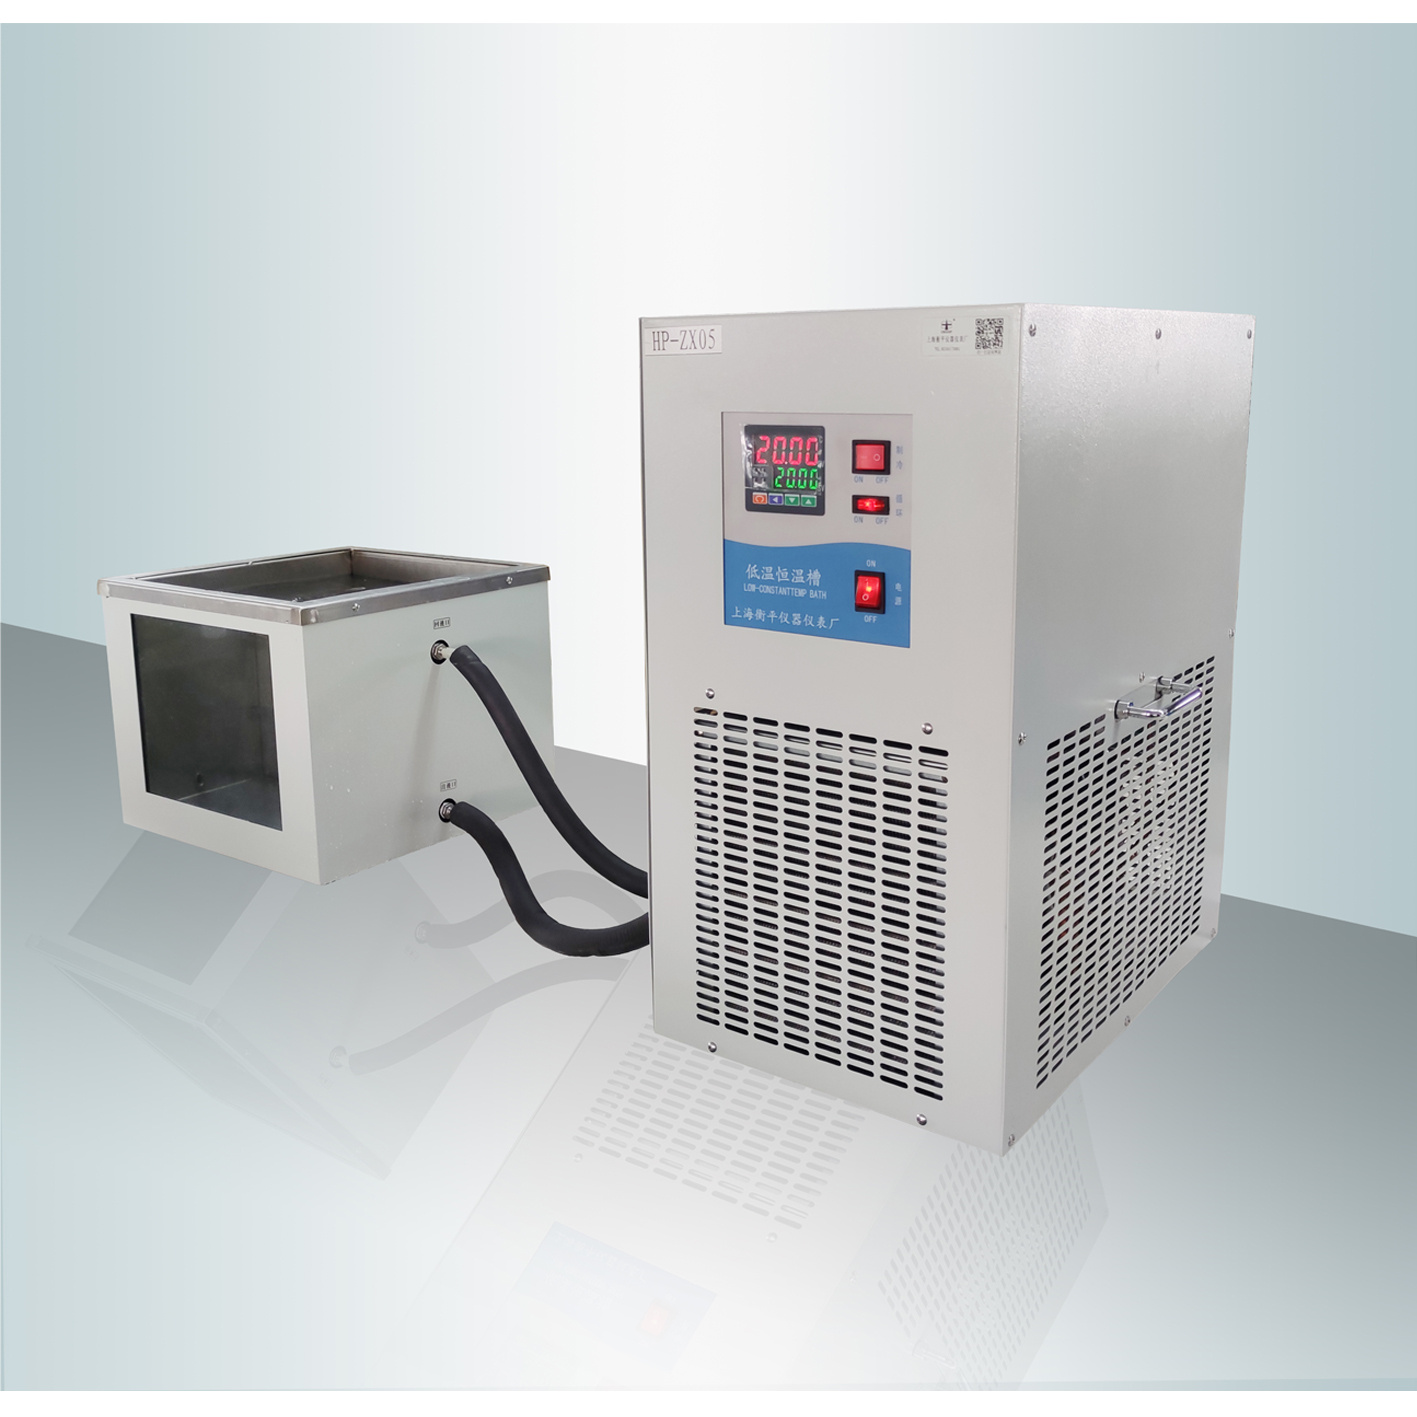 上海衡平  自吸恒温槽 厂家供应  水浴、油浴、恒温槽  HP-ZX05